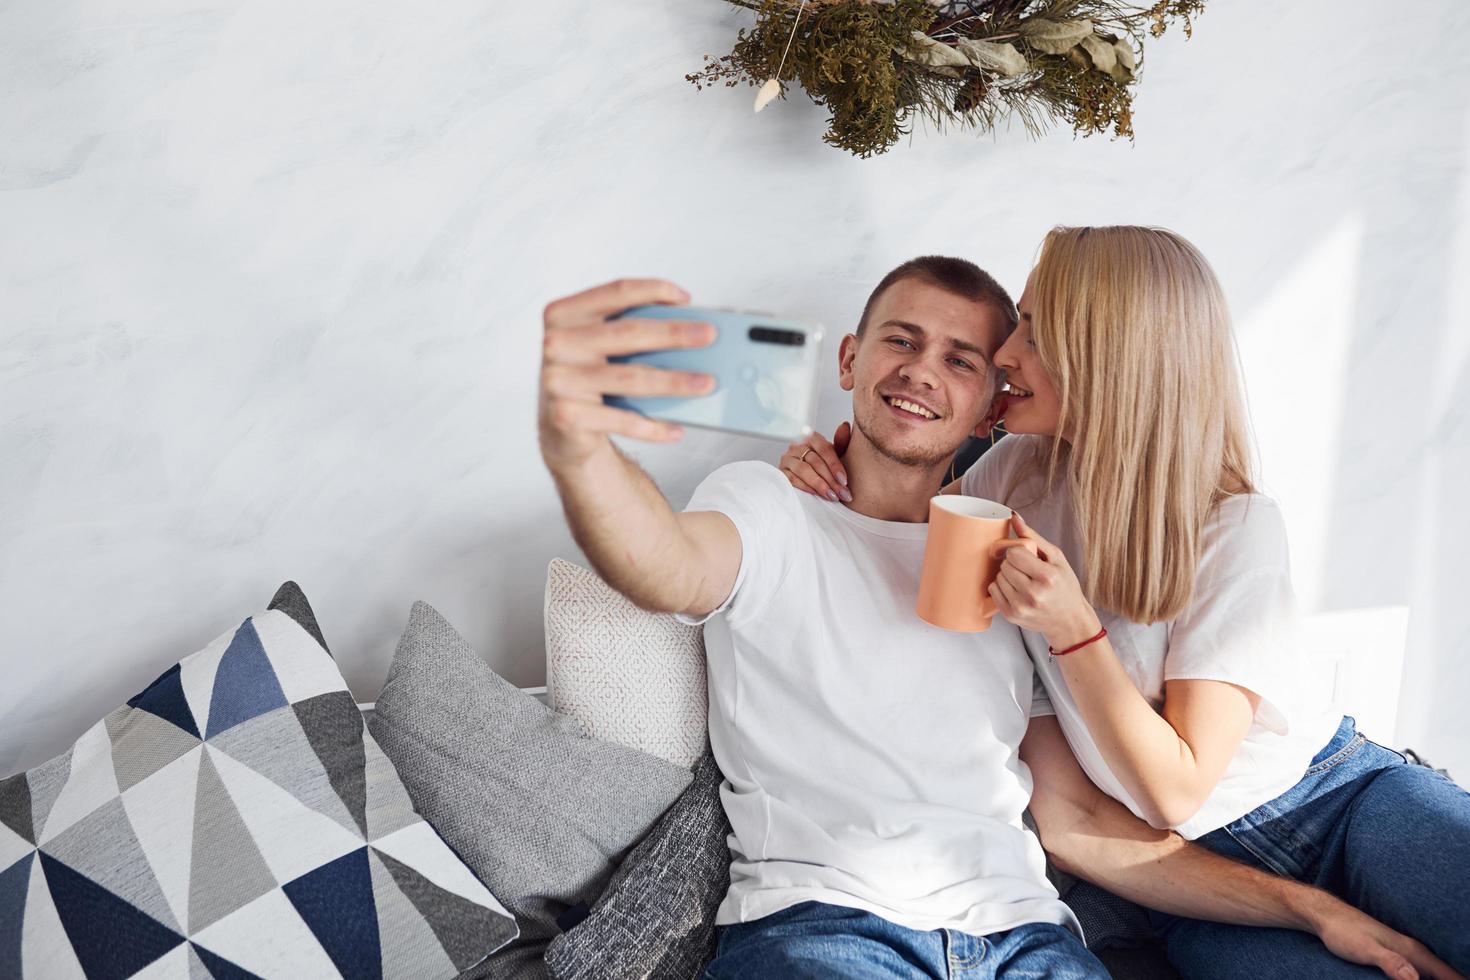 homme tenant un téléphone et faisant un selfie de lui-même et de sa petite amie photo